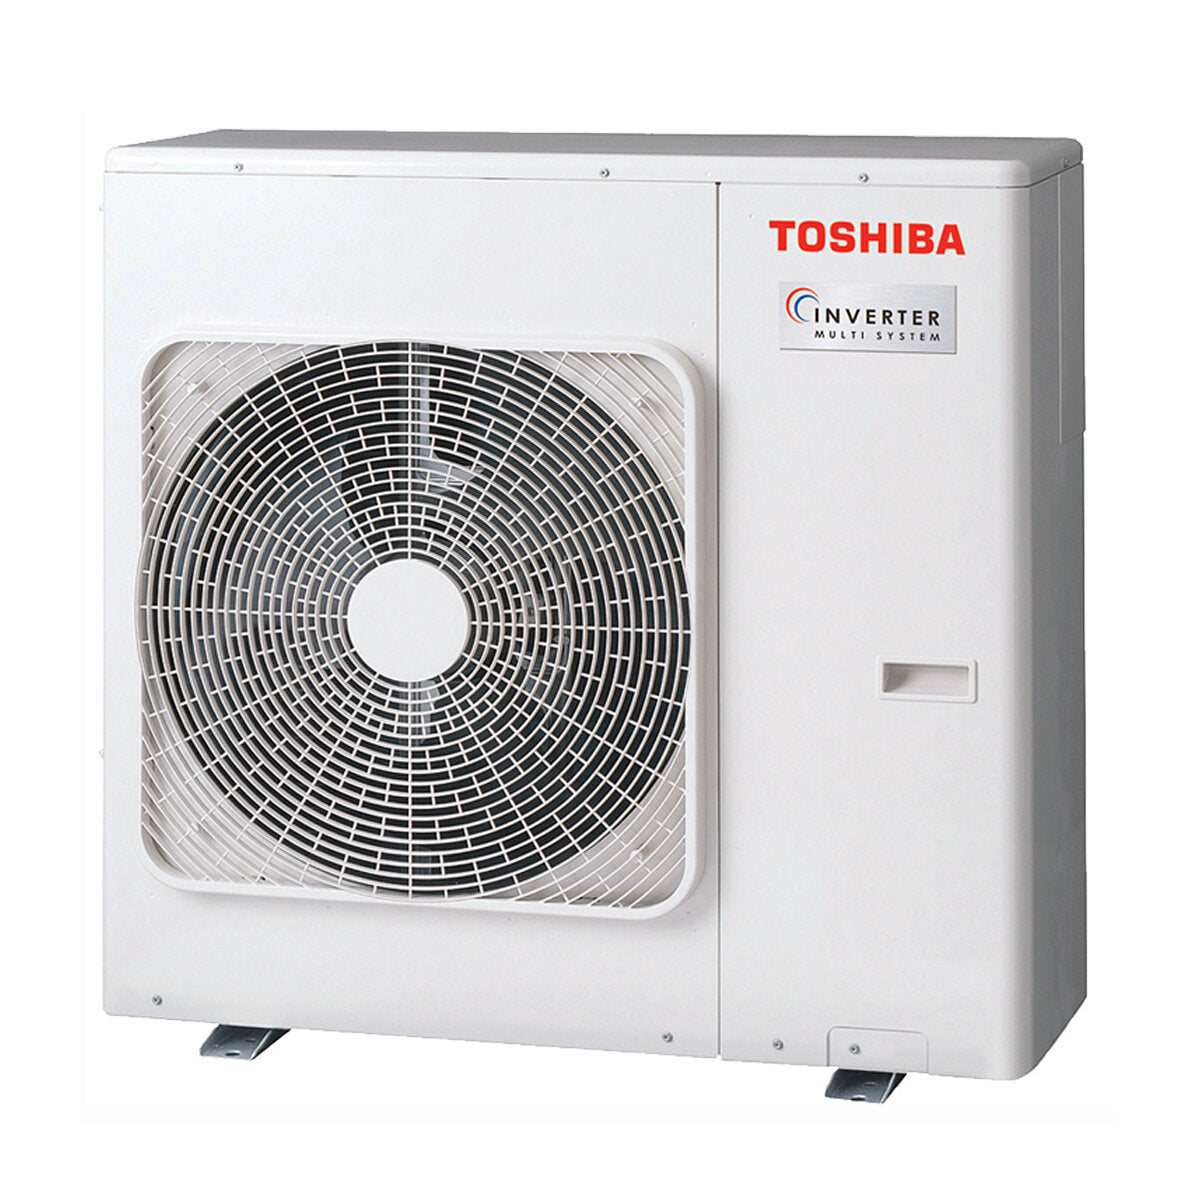 Toshiba Ducted Air Conditioner U2 Trial Split 7000 + 7000 + 24000 BTU Inverter A + Außengerät 8,0 kW